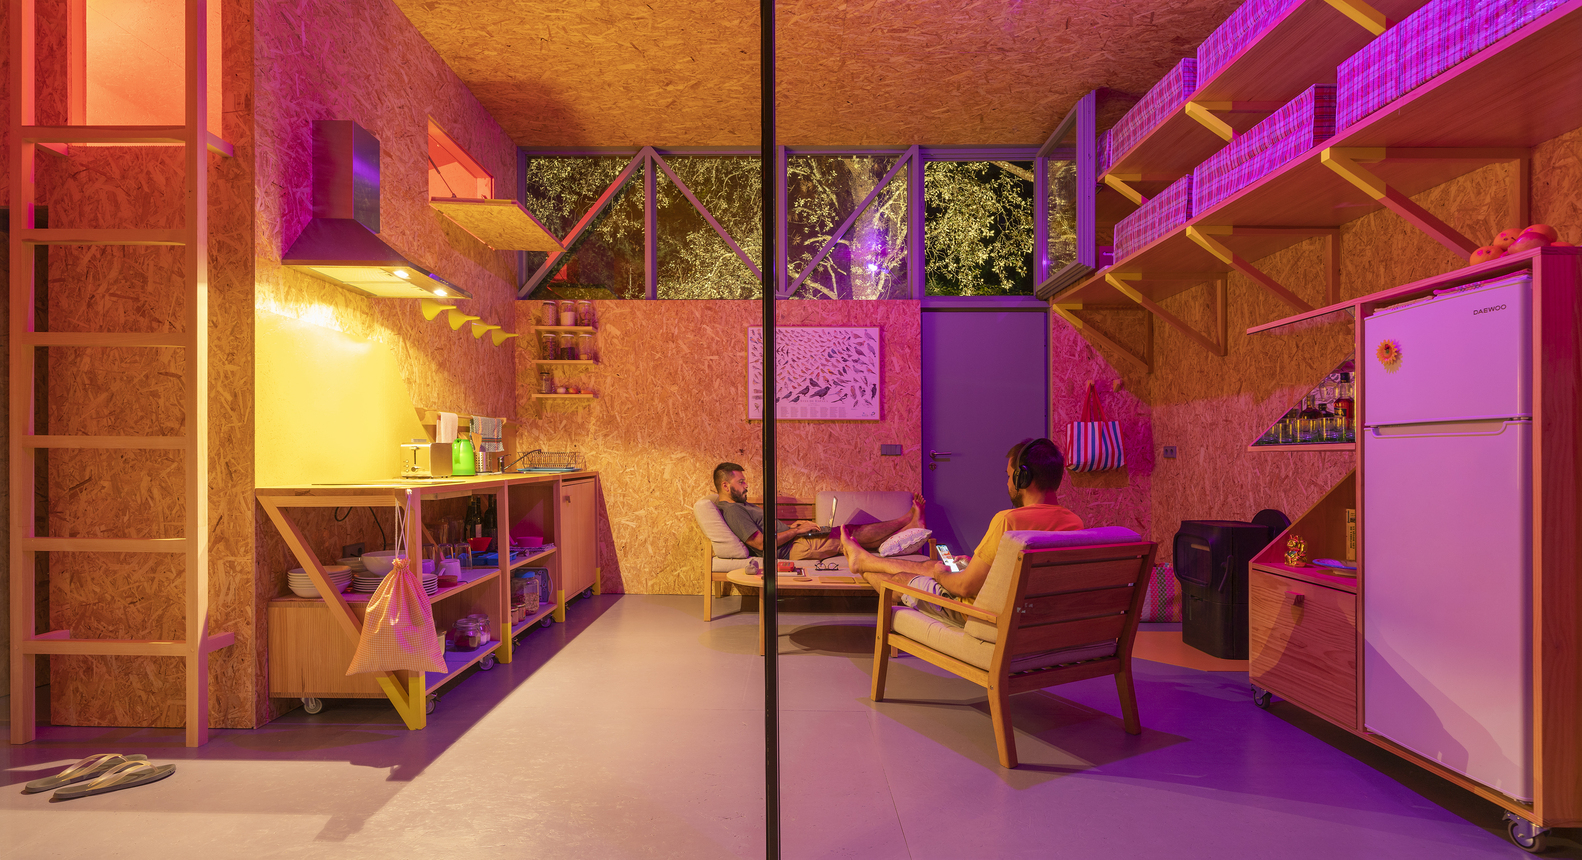 Ngôi nhà nhỏ được thiết kế cho 2 khách hàng là Diego Barajas - người đồng sáng lập studio Diego Barajas - và đối tác của anh ấy để làm nơi sinh sống và làm việc.